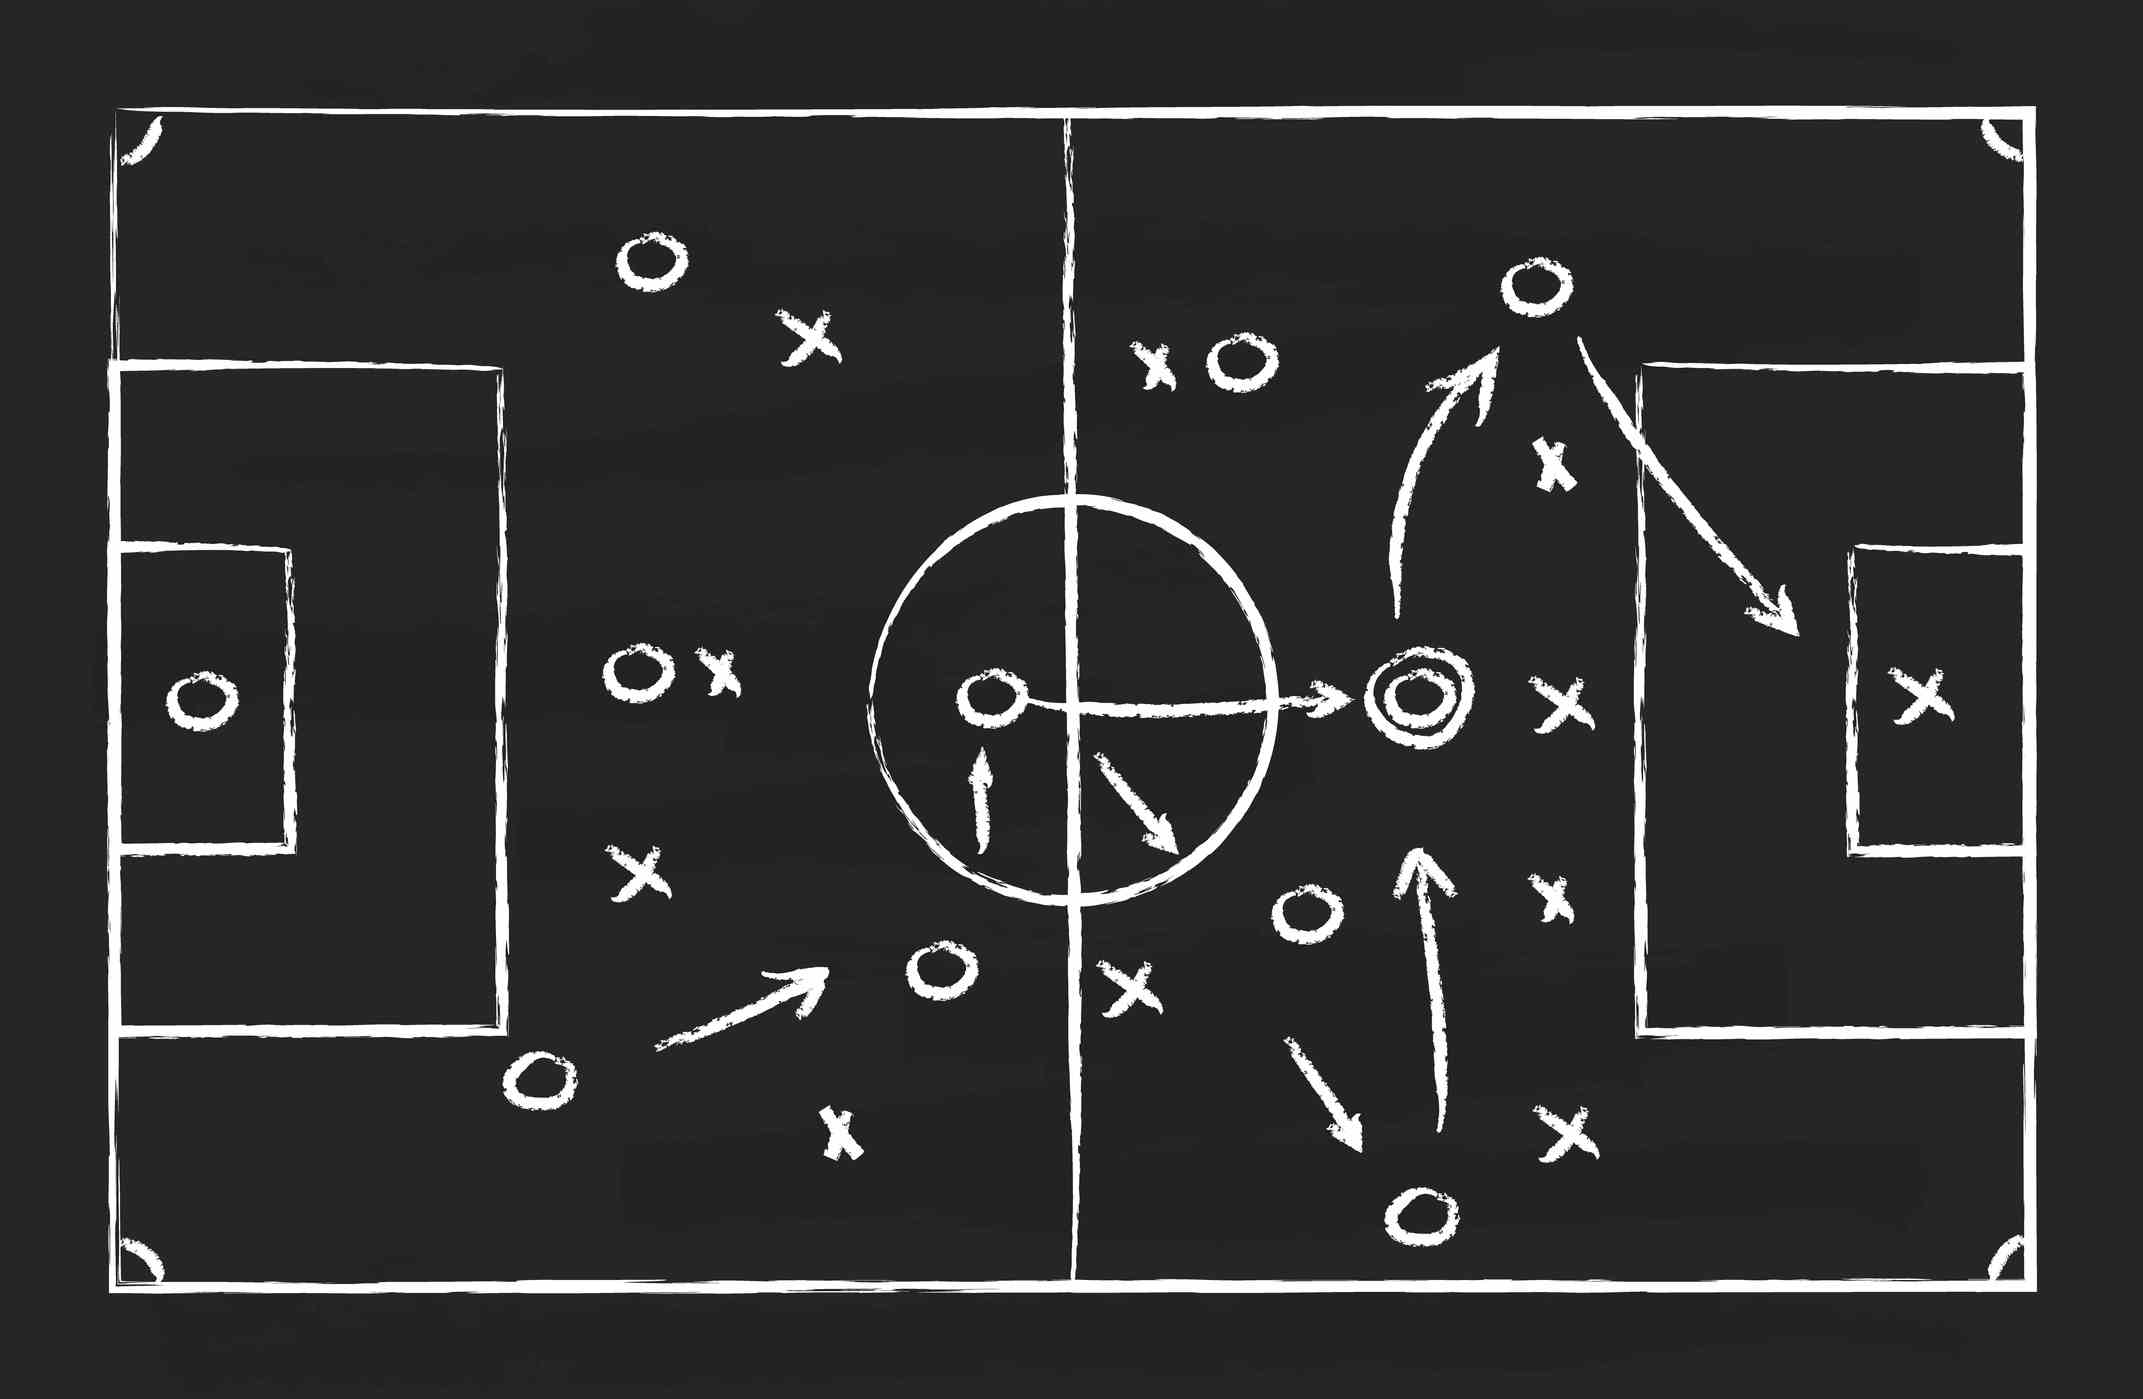 Tafel mit Fußballstrategie